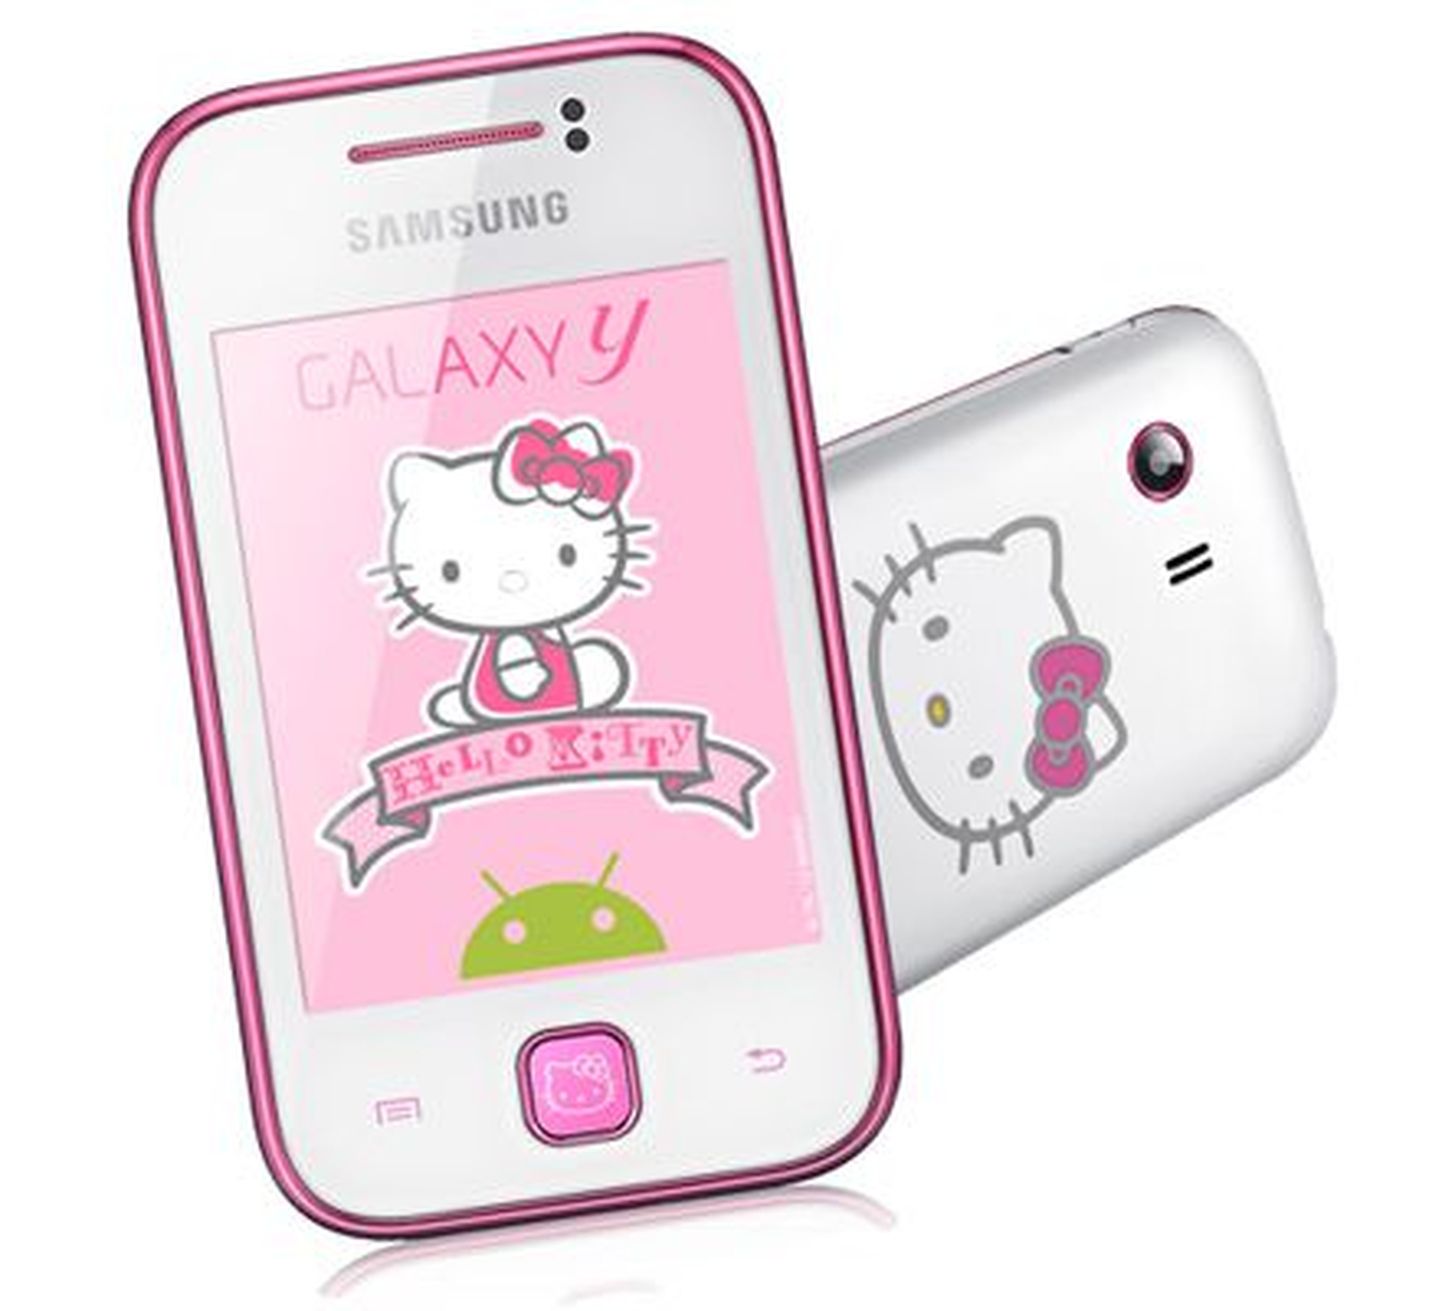 Samsung Galaxy Y Hello Kitty.